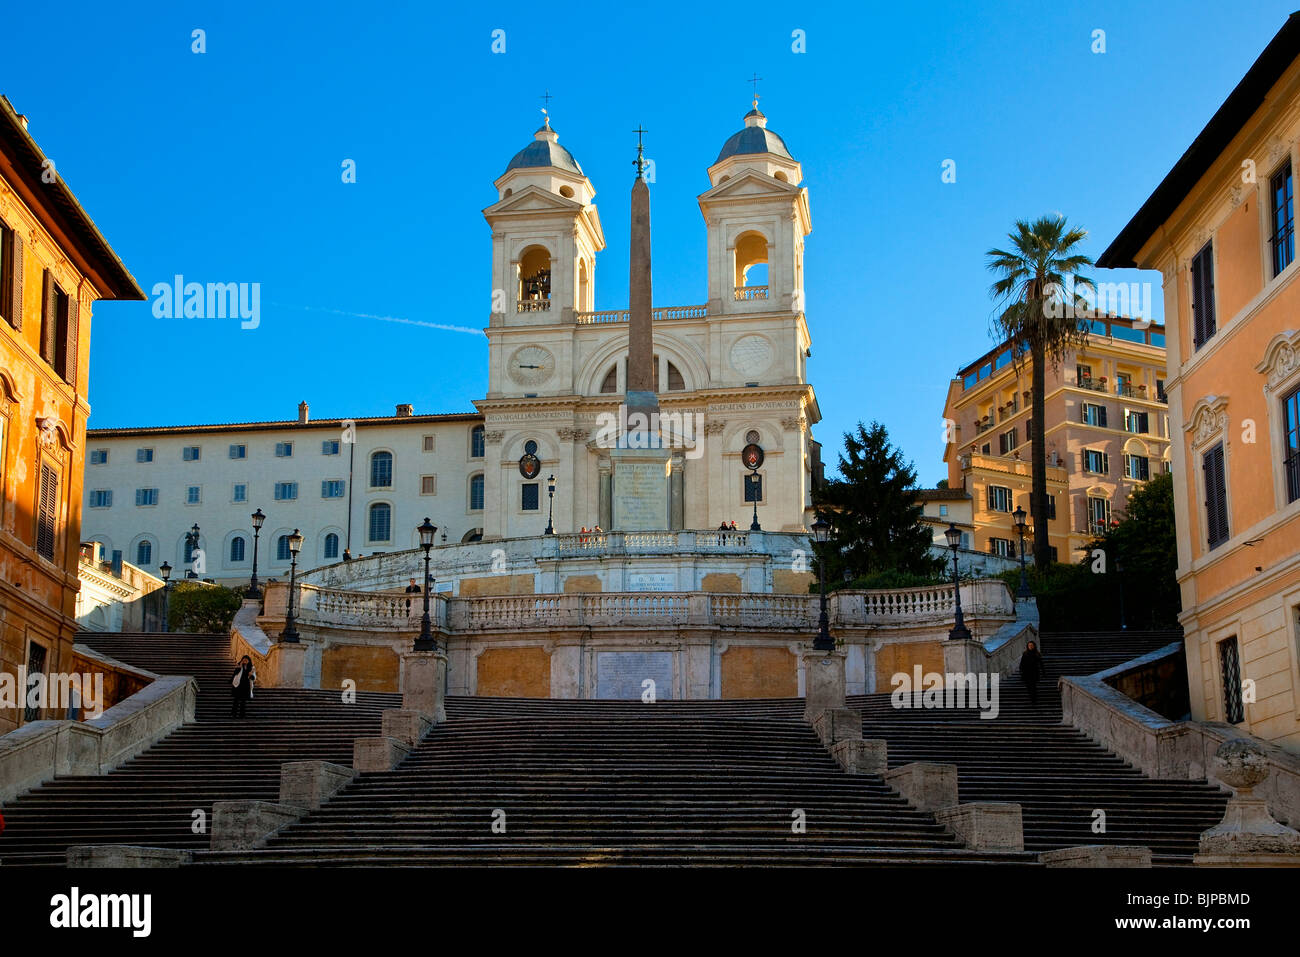 Piazza di Spagna and Trinità dei Monti church, Rome Stock Photo